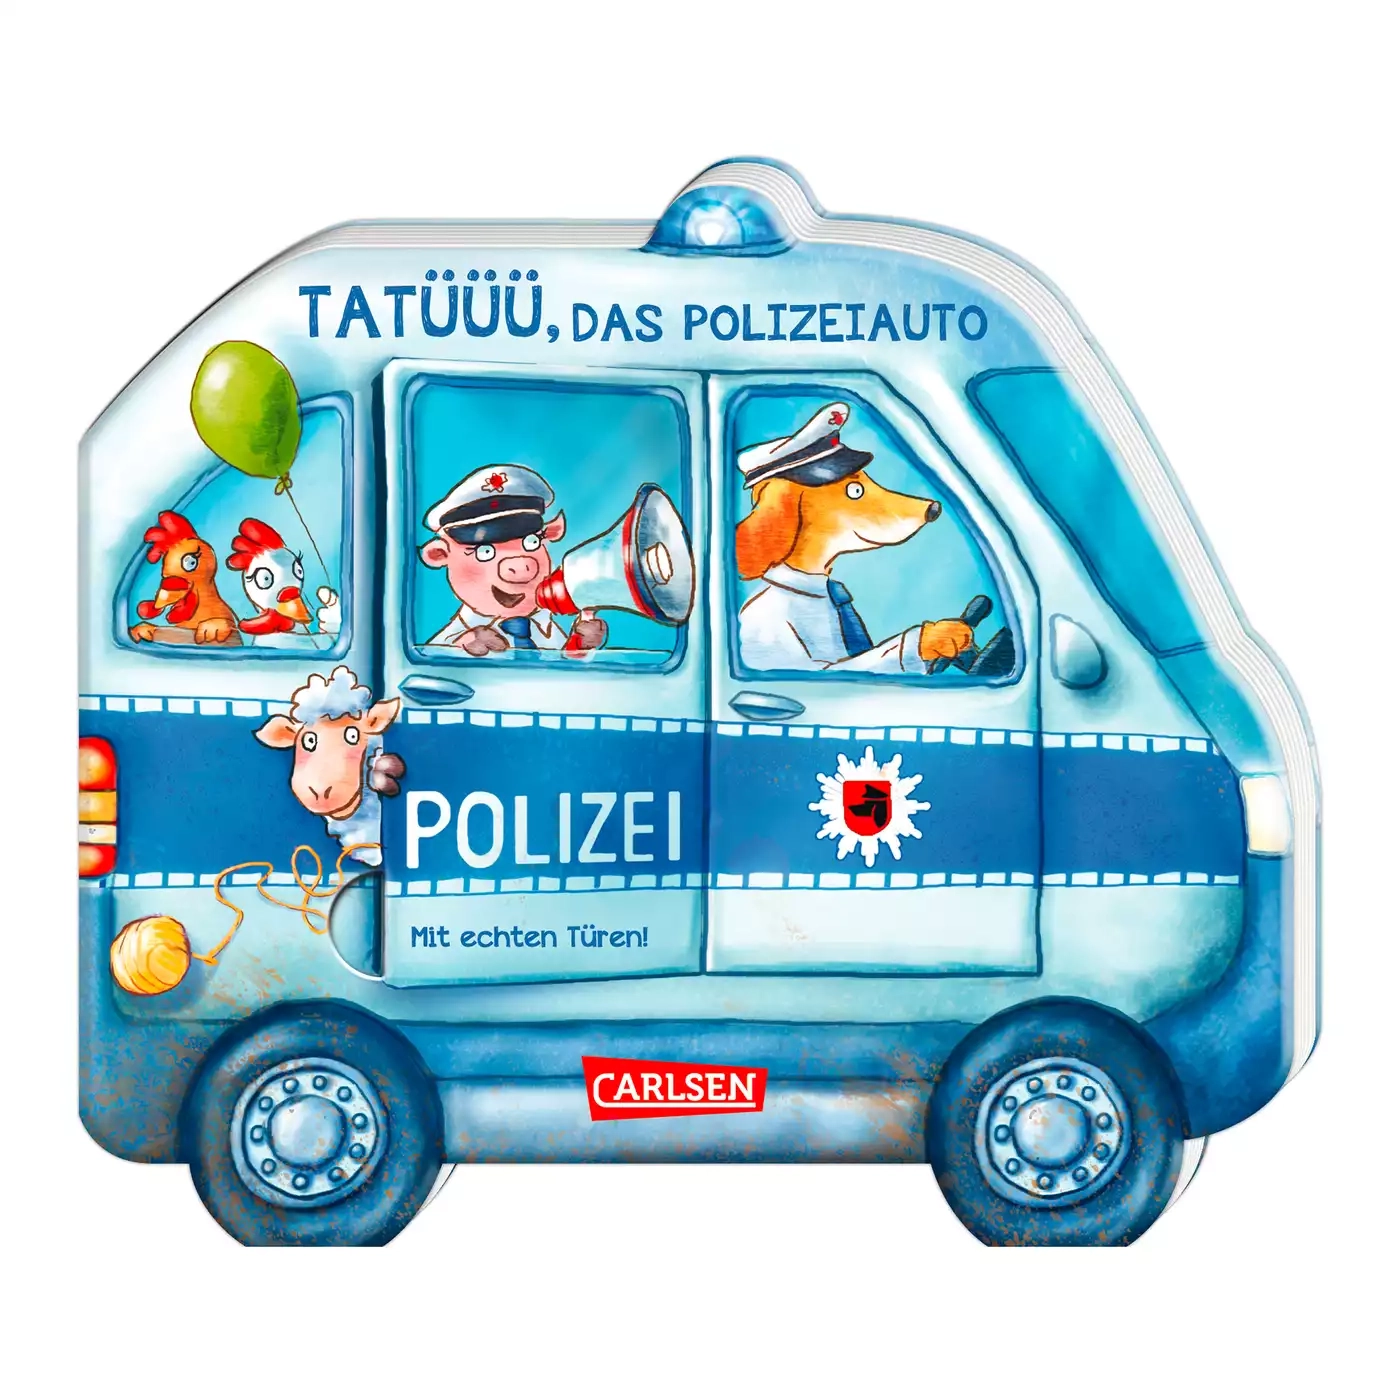 Tatüüü, das Polizeiauto CARLSEN 2000577792009 1